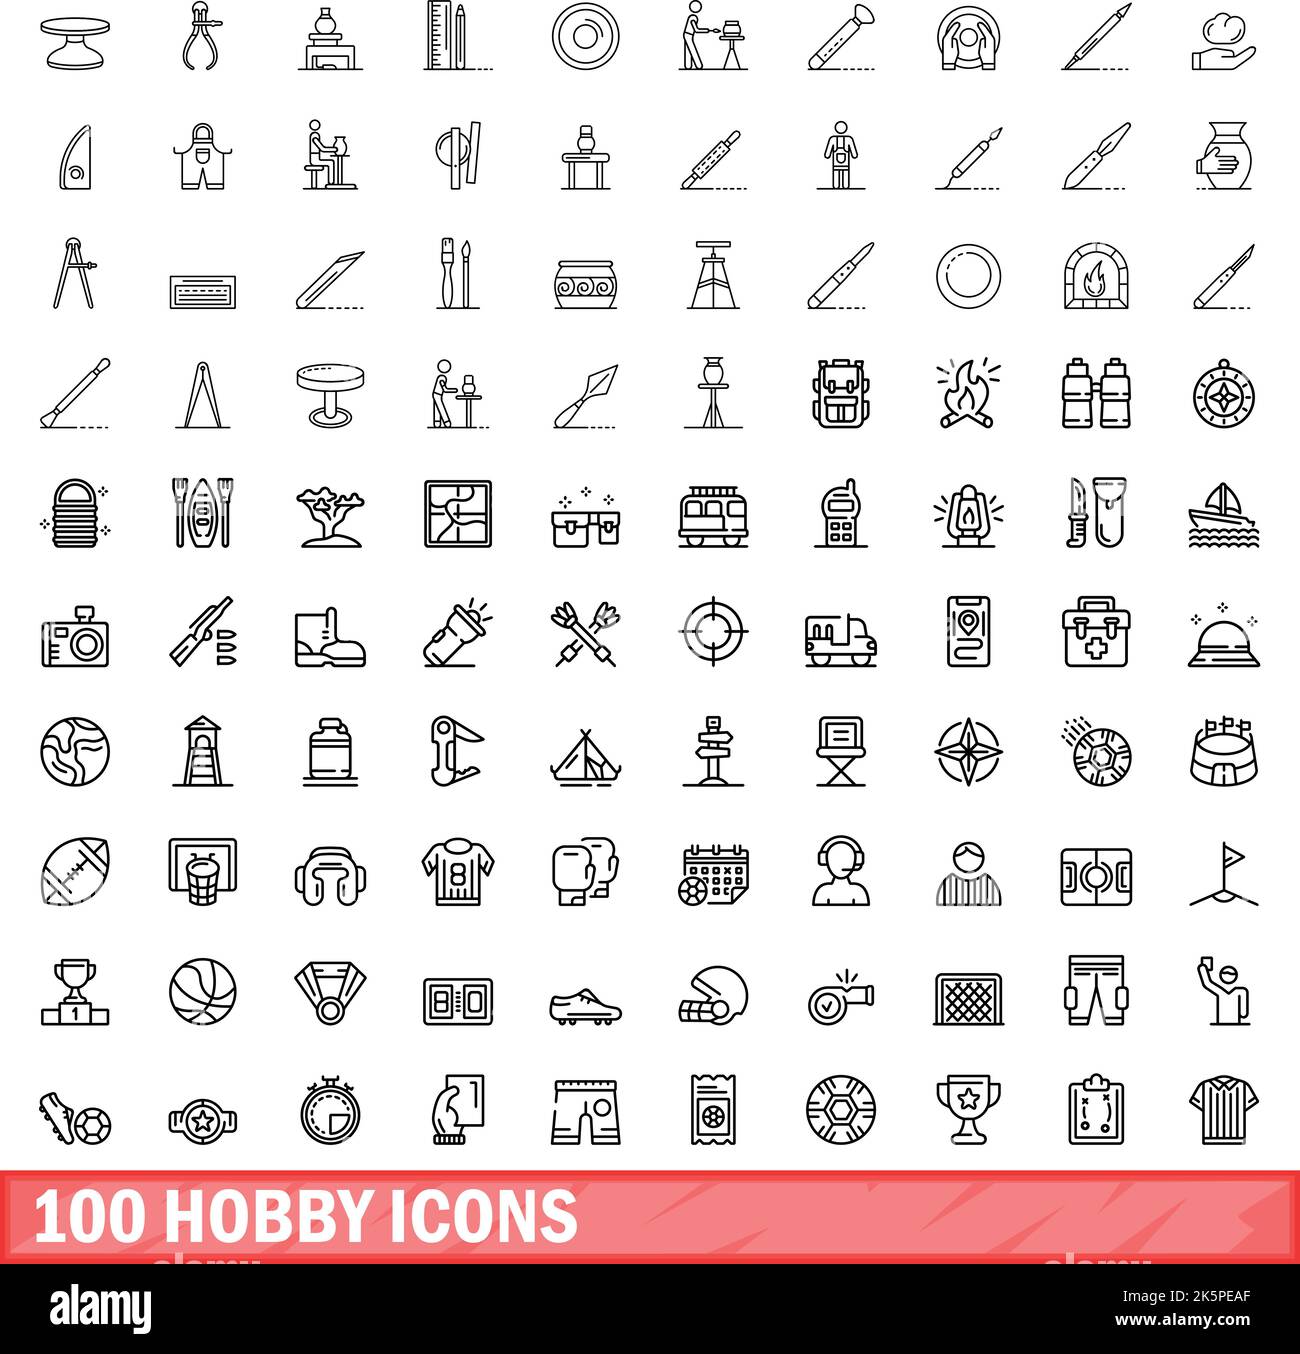 100 Hobby Icons Set. Skizzieren Illustration von 100 Hobby-Symbole Vektor-Set isoliert auf weißem Hintergrund Stock Vektor